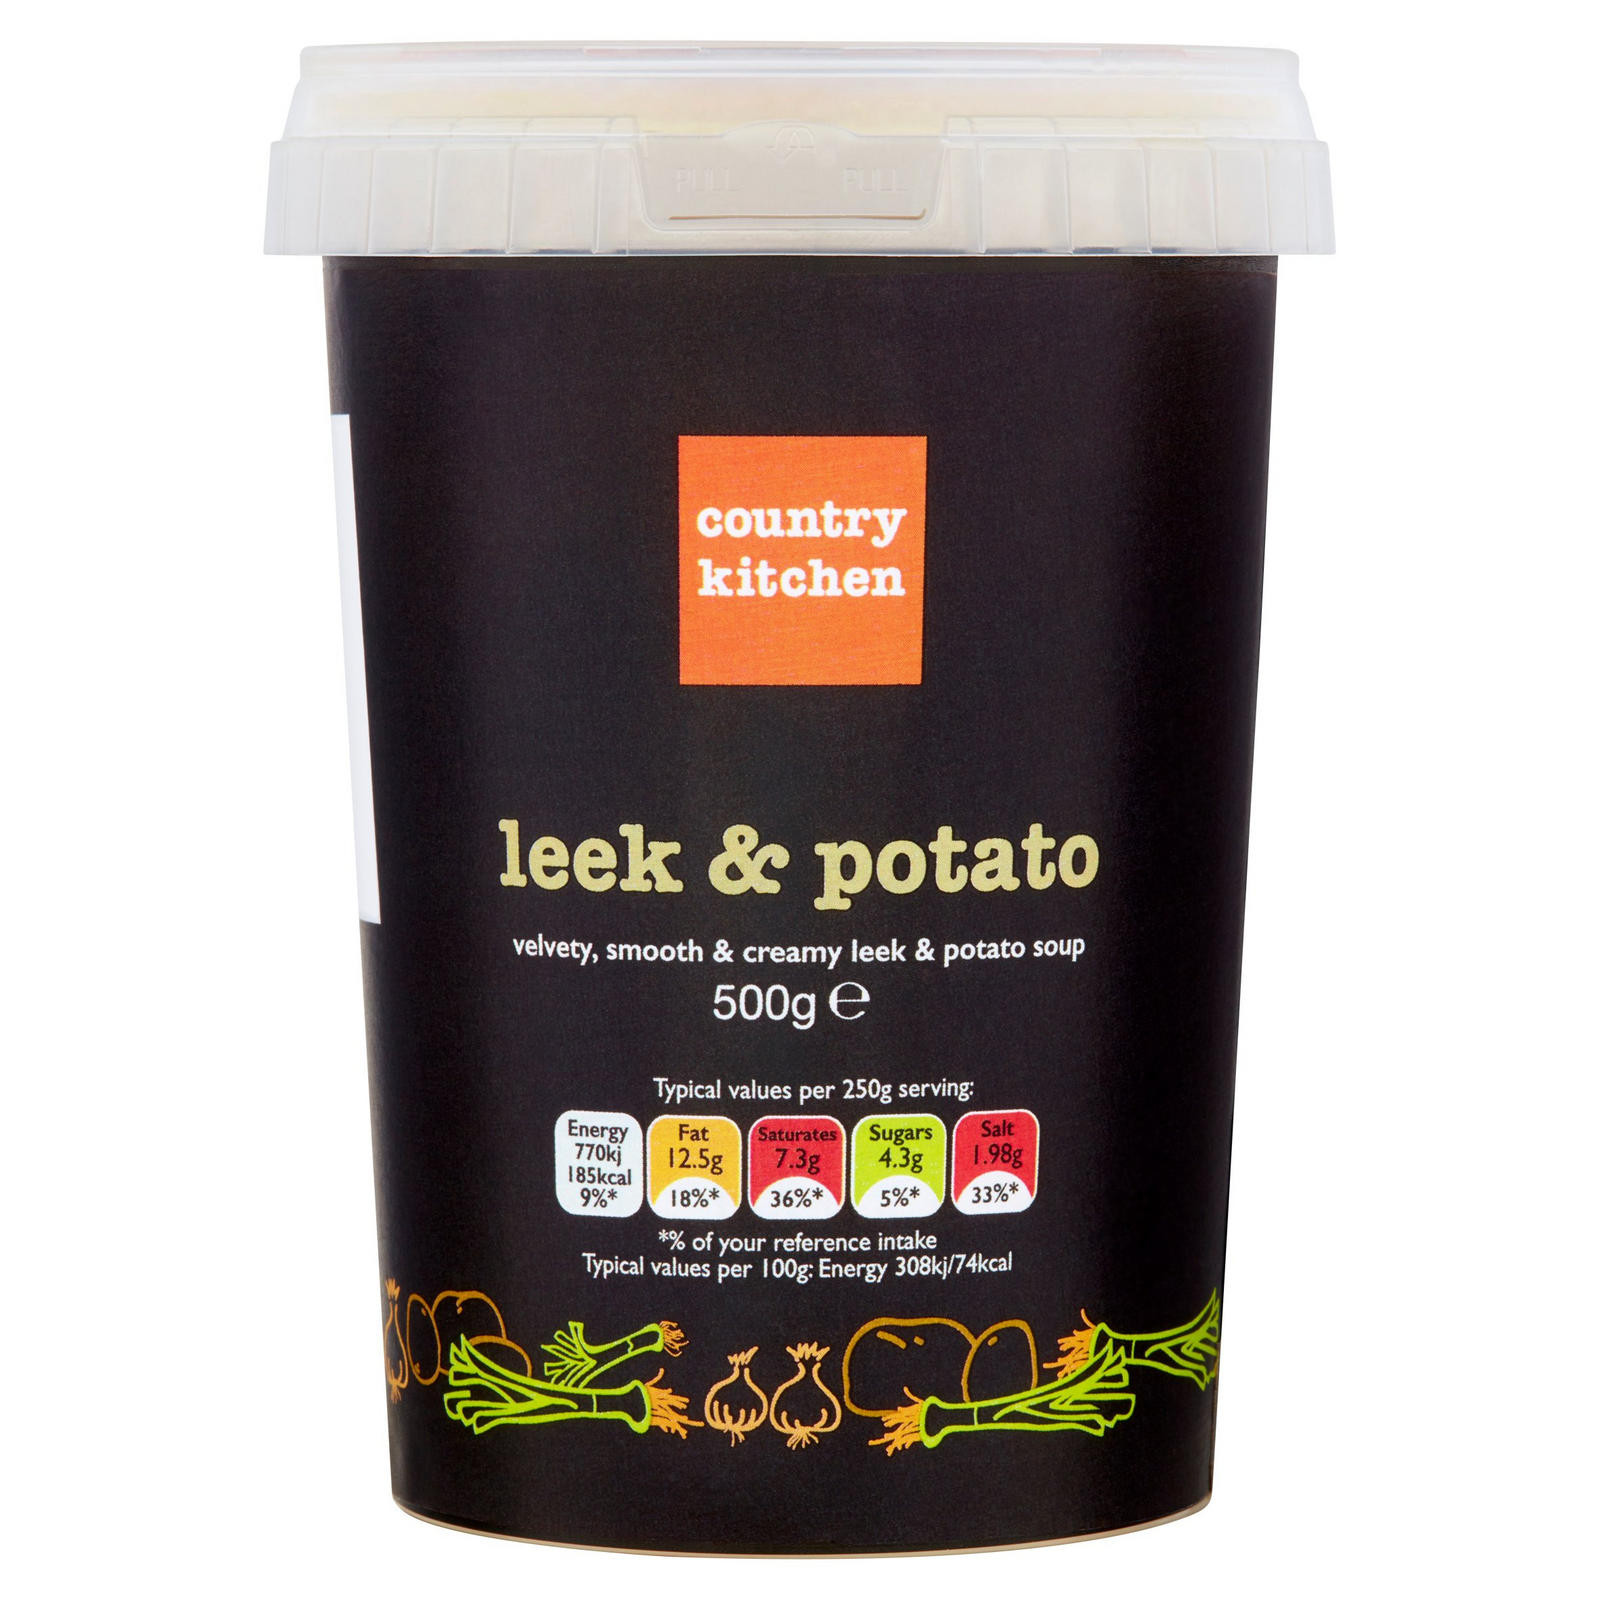 Country Potato Soup
 Country Kitchen Leek & Potato Soup 500g